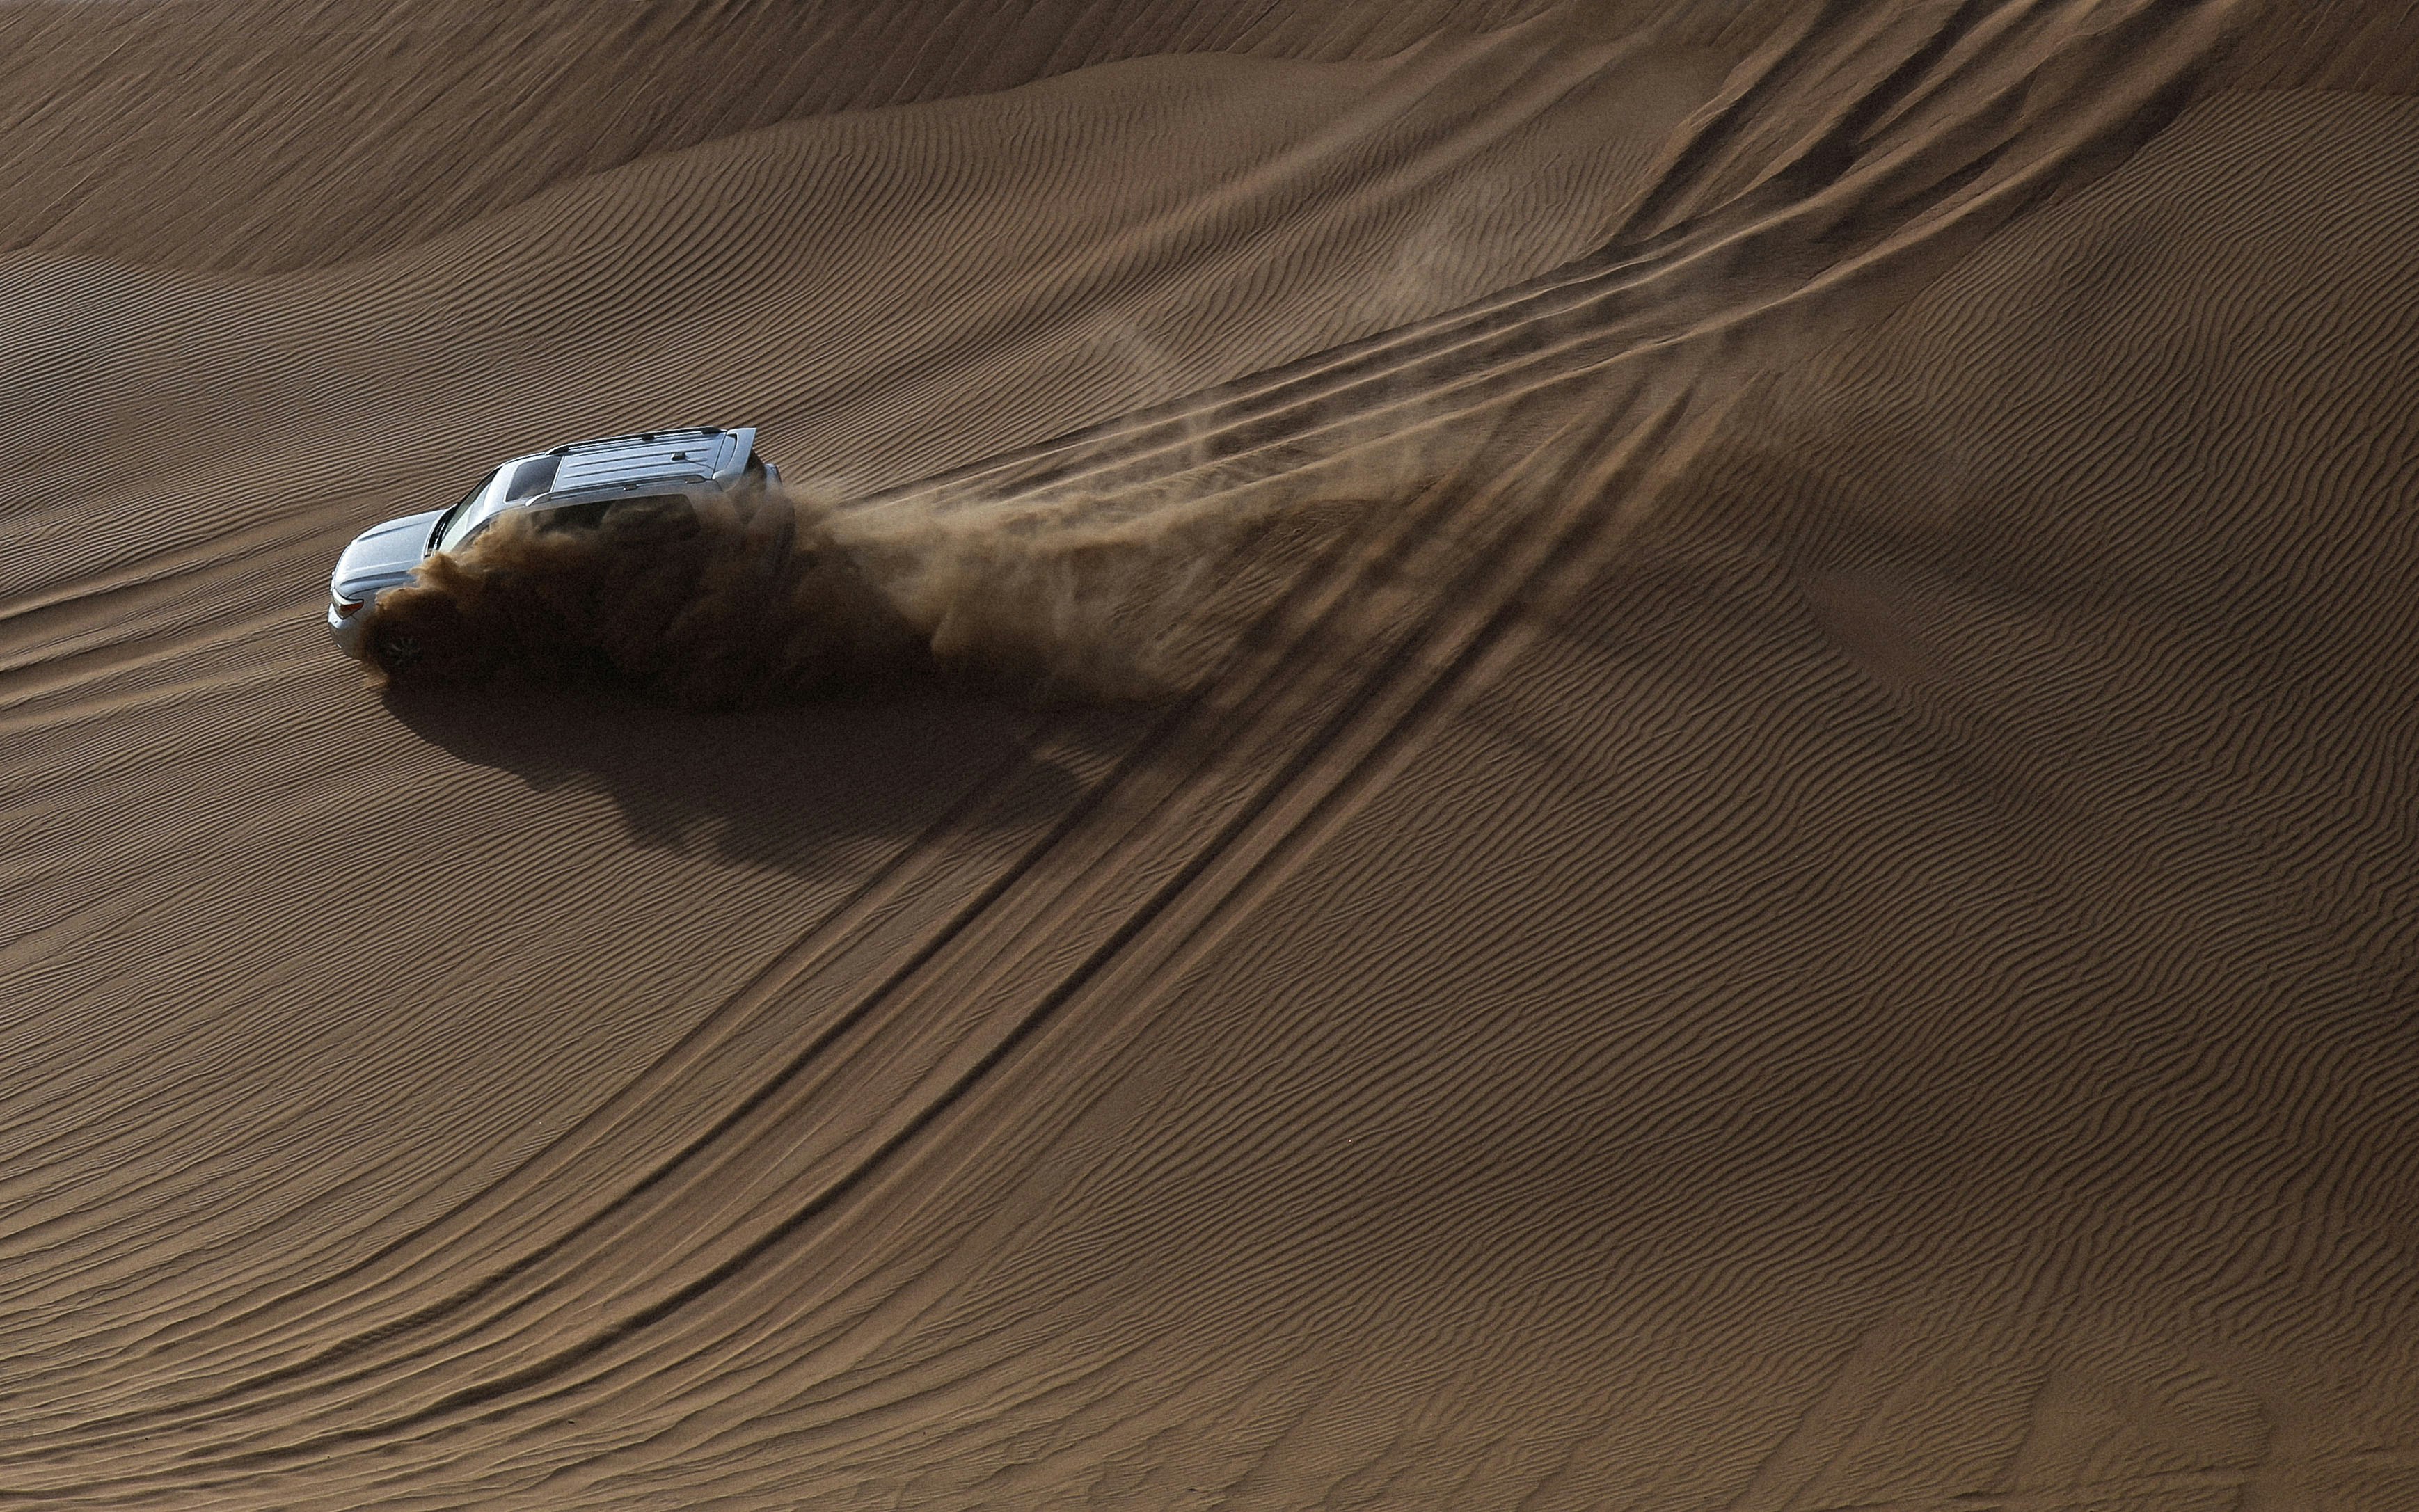 white SUV on desert